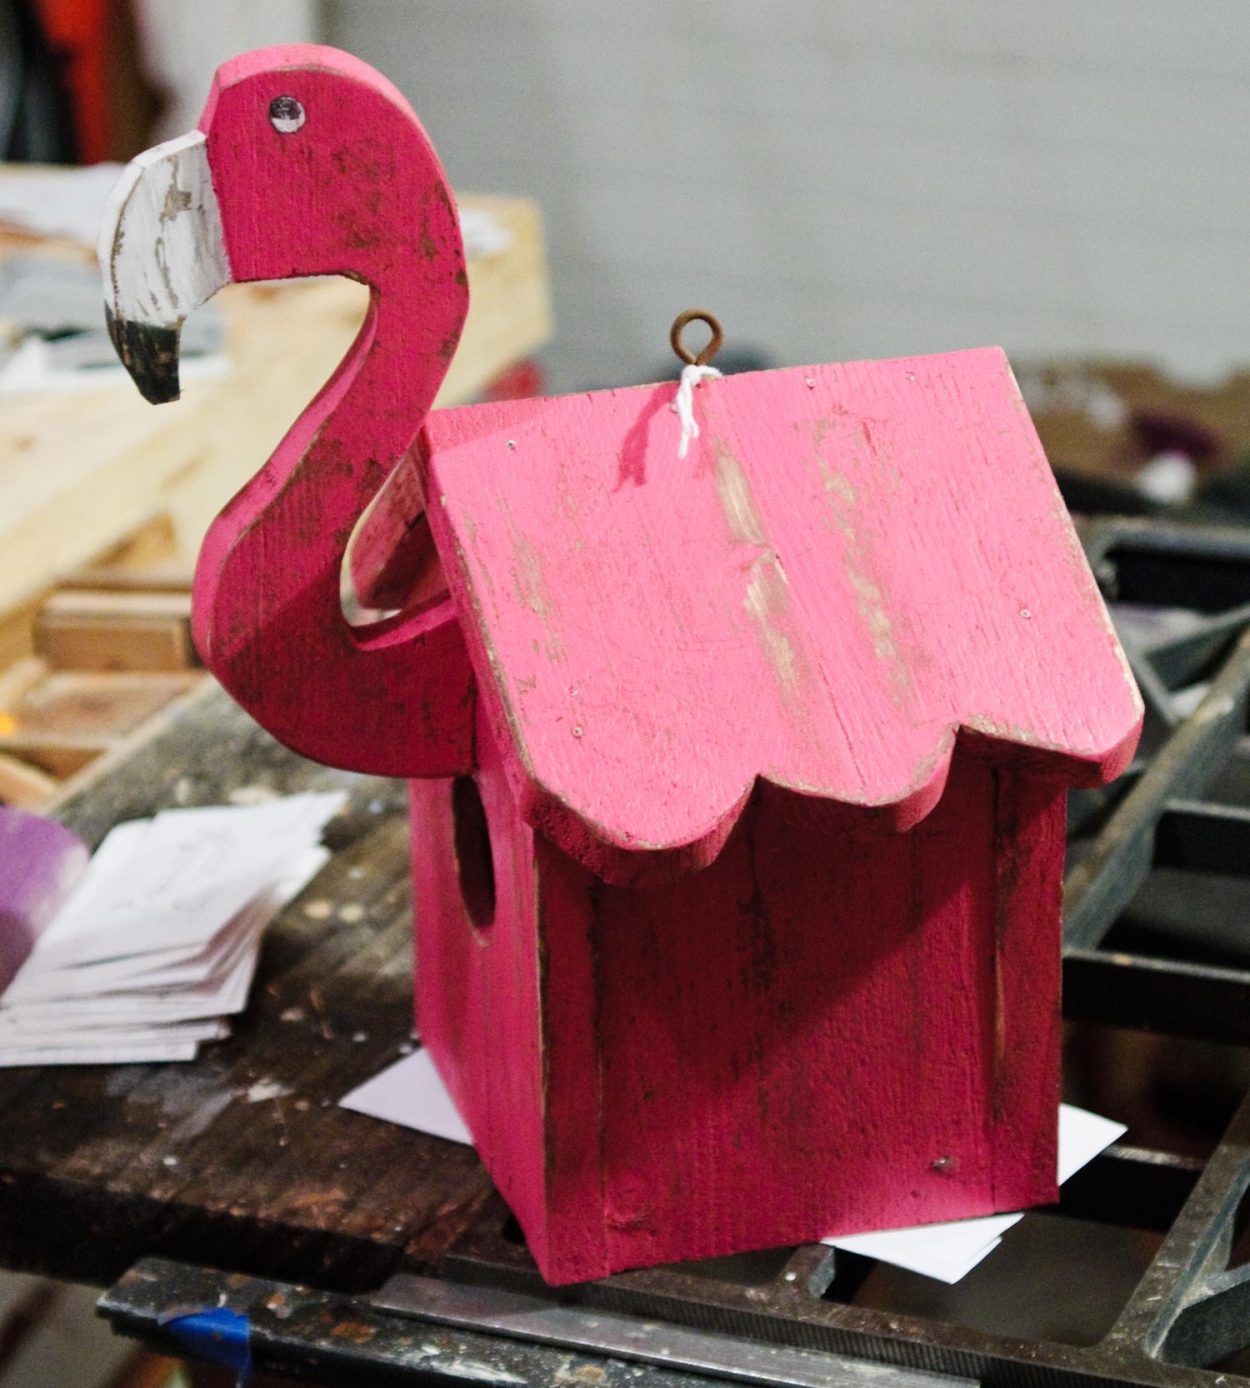 The Flamingo Birdhouse